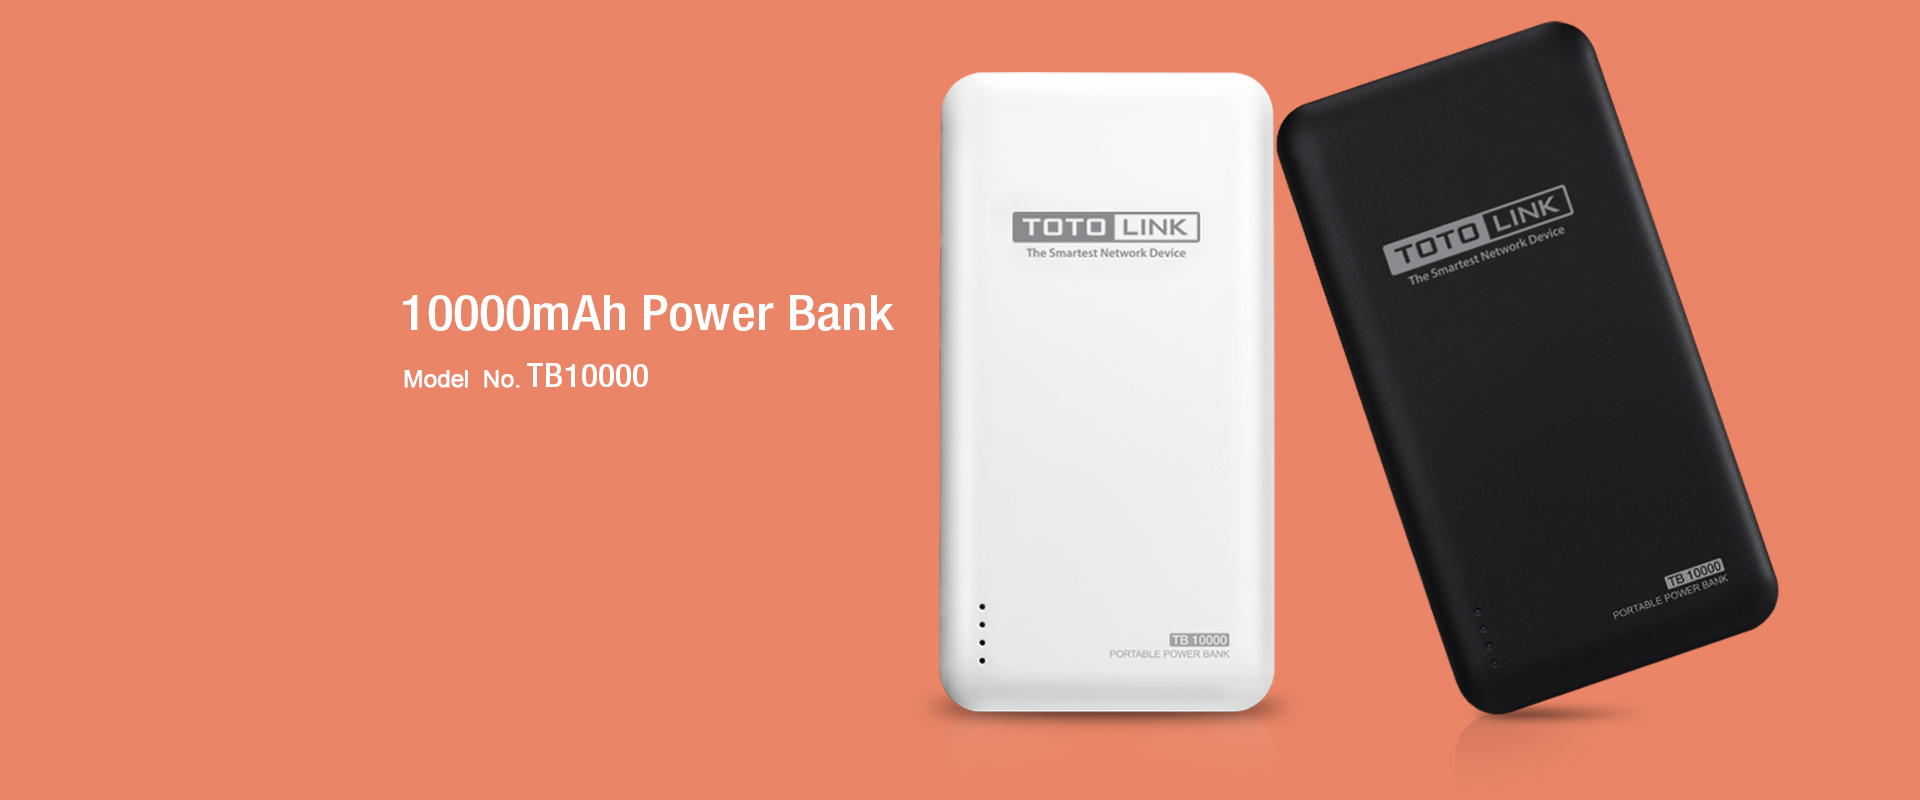 TB10000MAH-Power-bank-Dubai